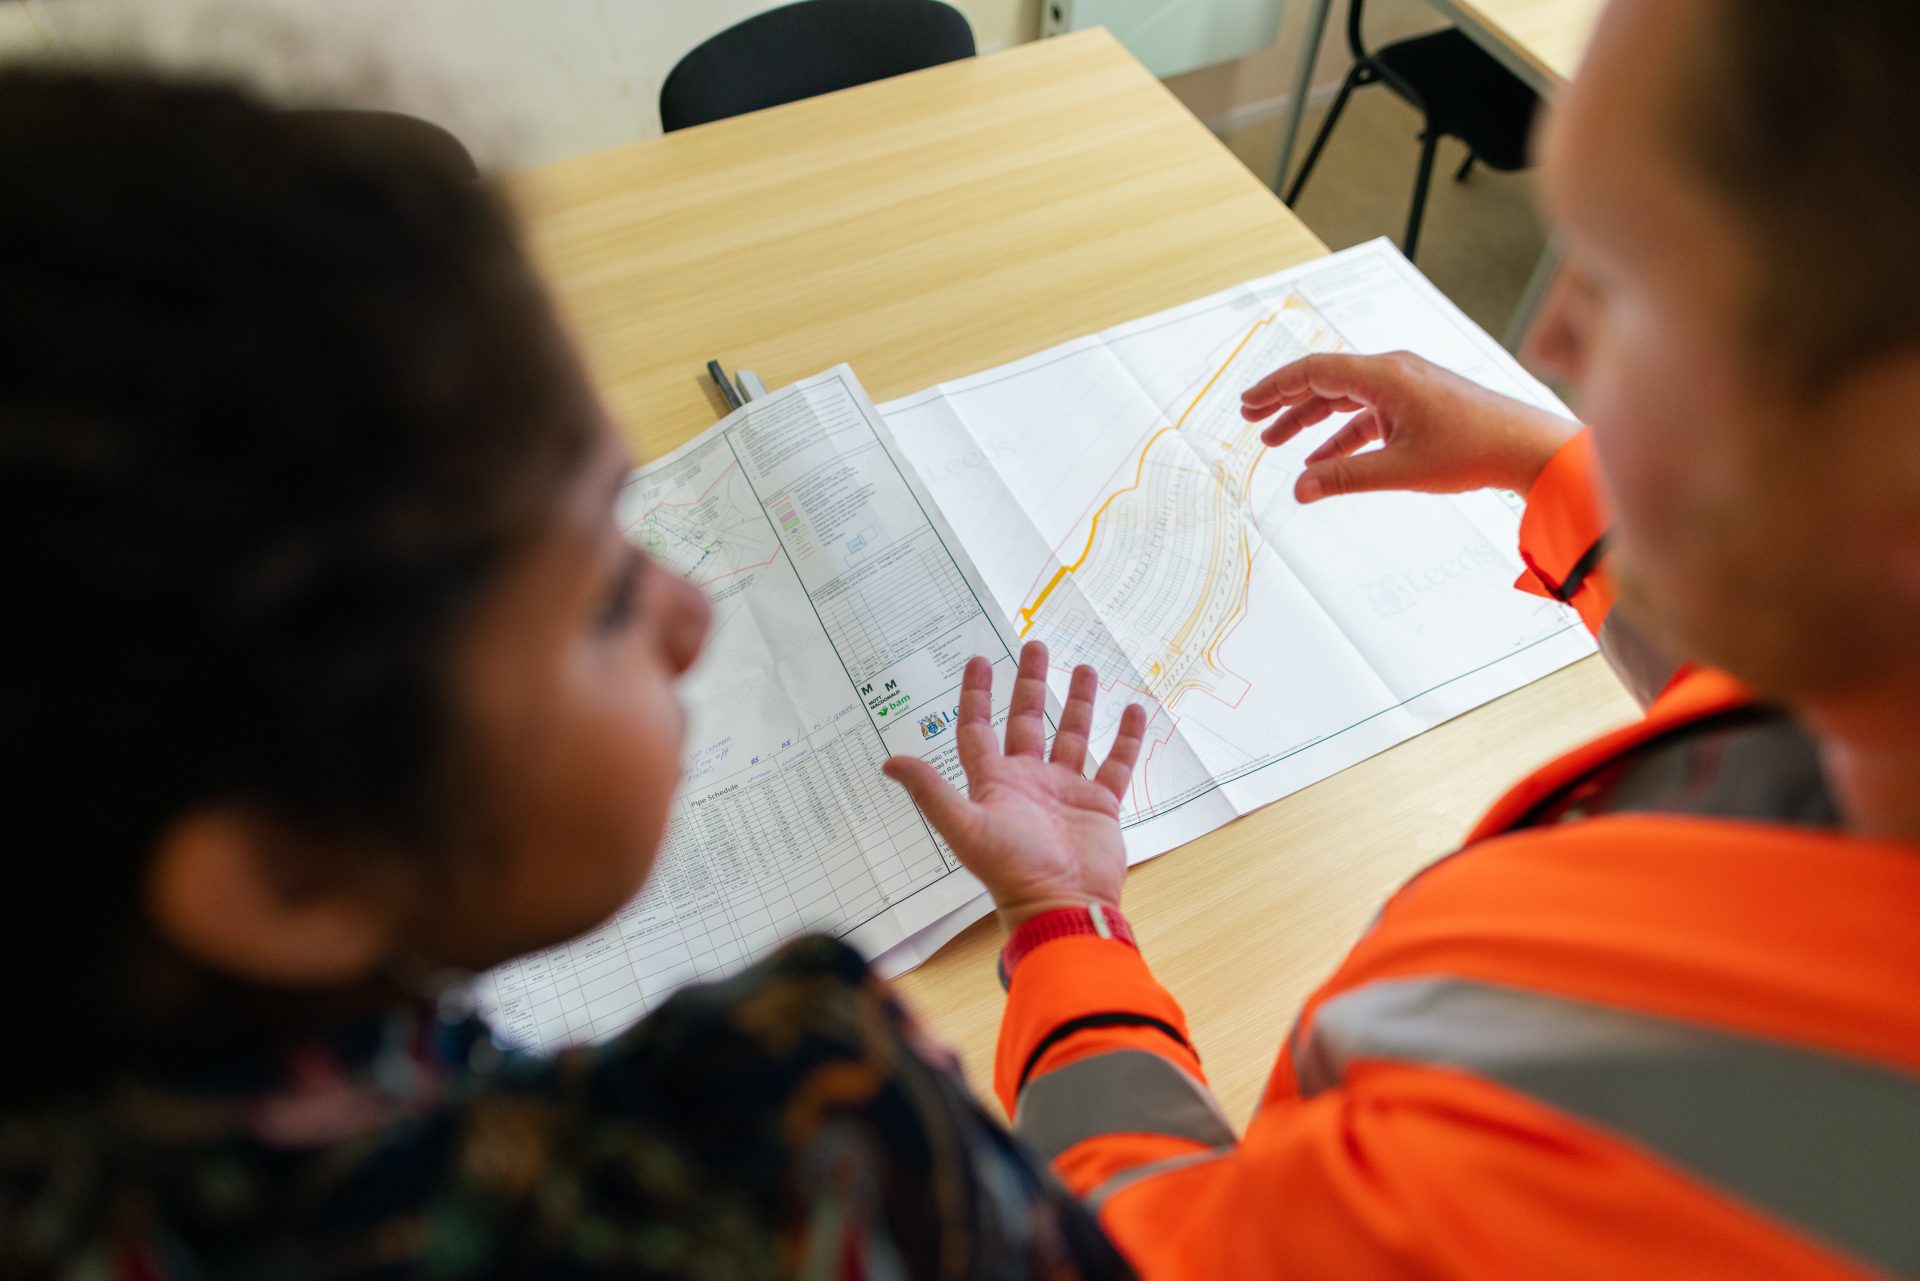 Dos personas están de pie delante de un mapa de planificación sobre la mesa. Una de las personas lleva un chaleco naranja de alta visibilidad.